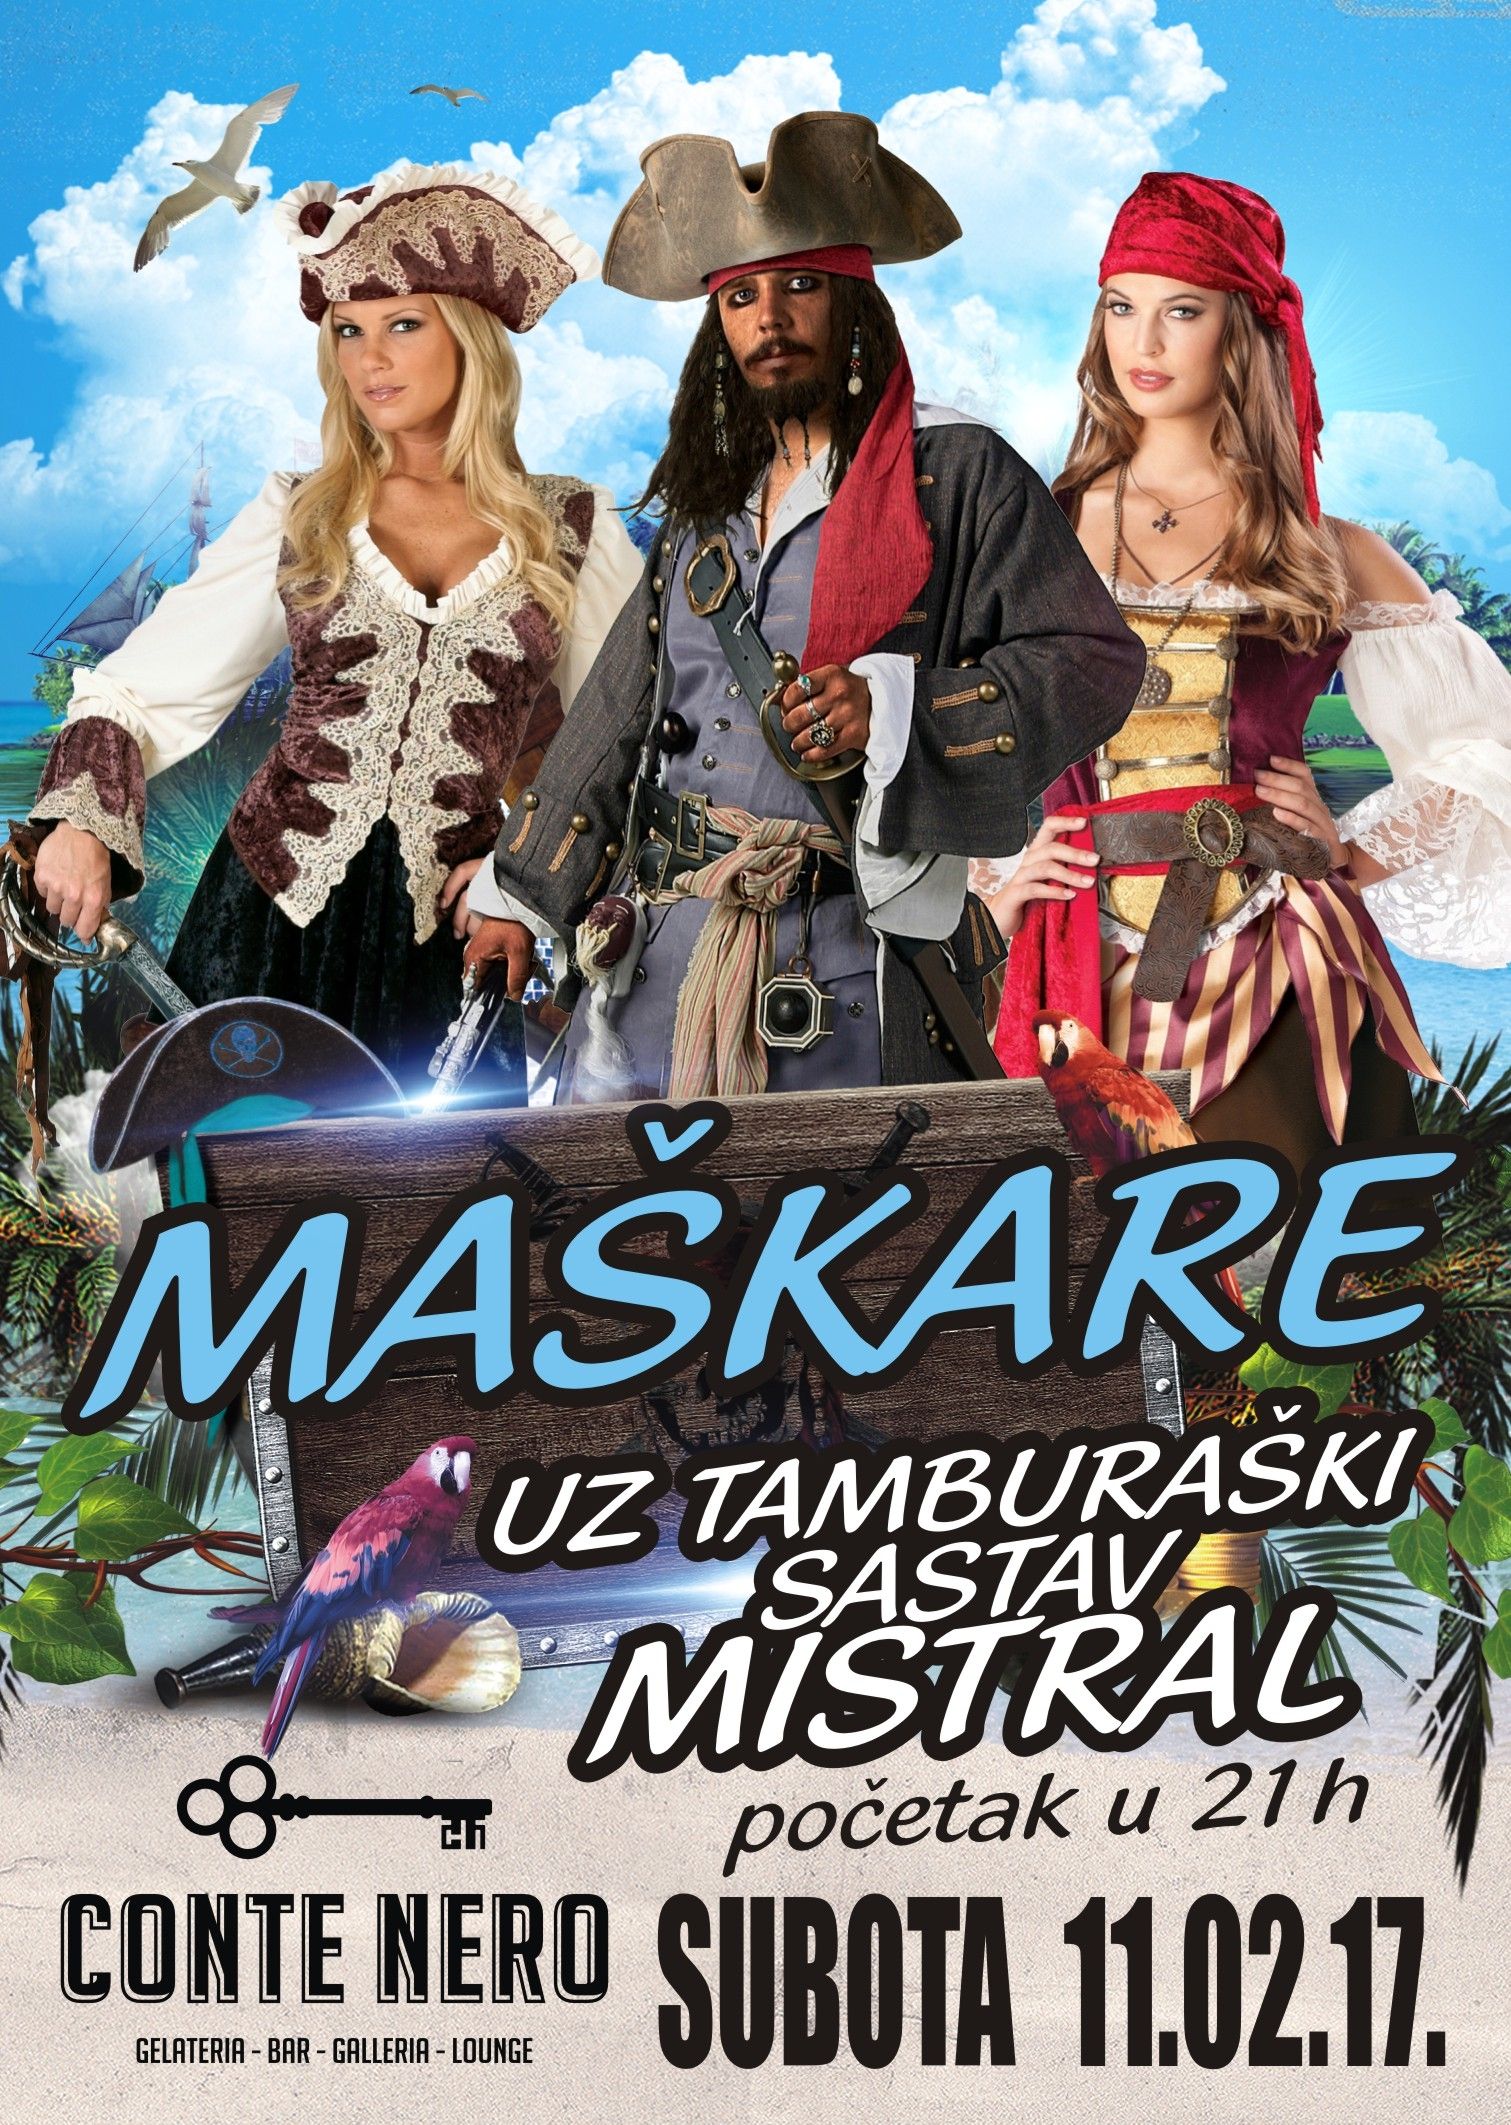 Karnevalska subota s piratima i tamburašima u CONTE NERU / Subota 11.2.2017. u 21h